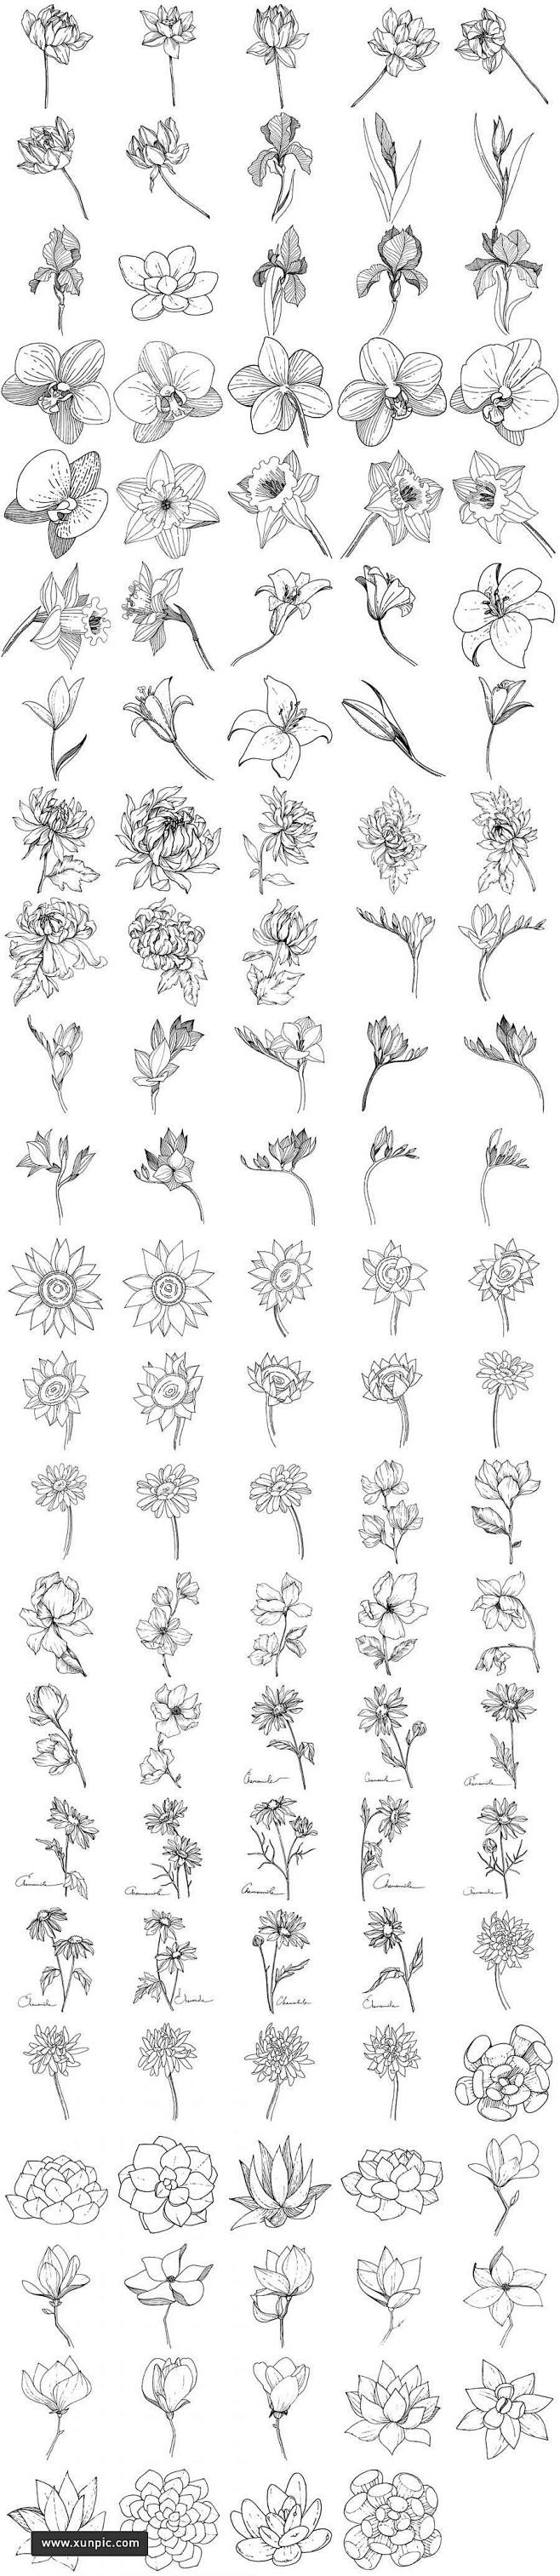 144款植物白描速写矢量素材 插图插画 